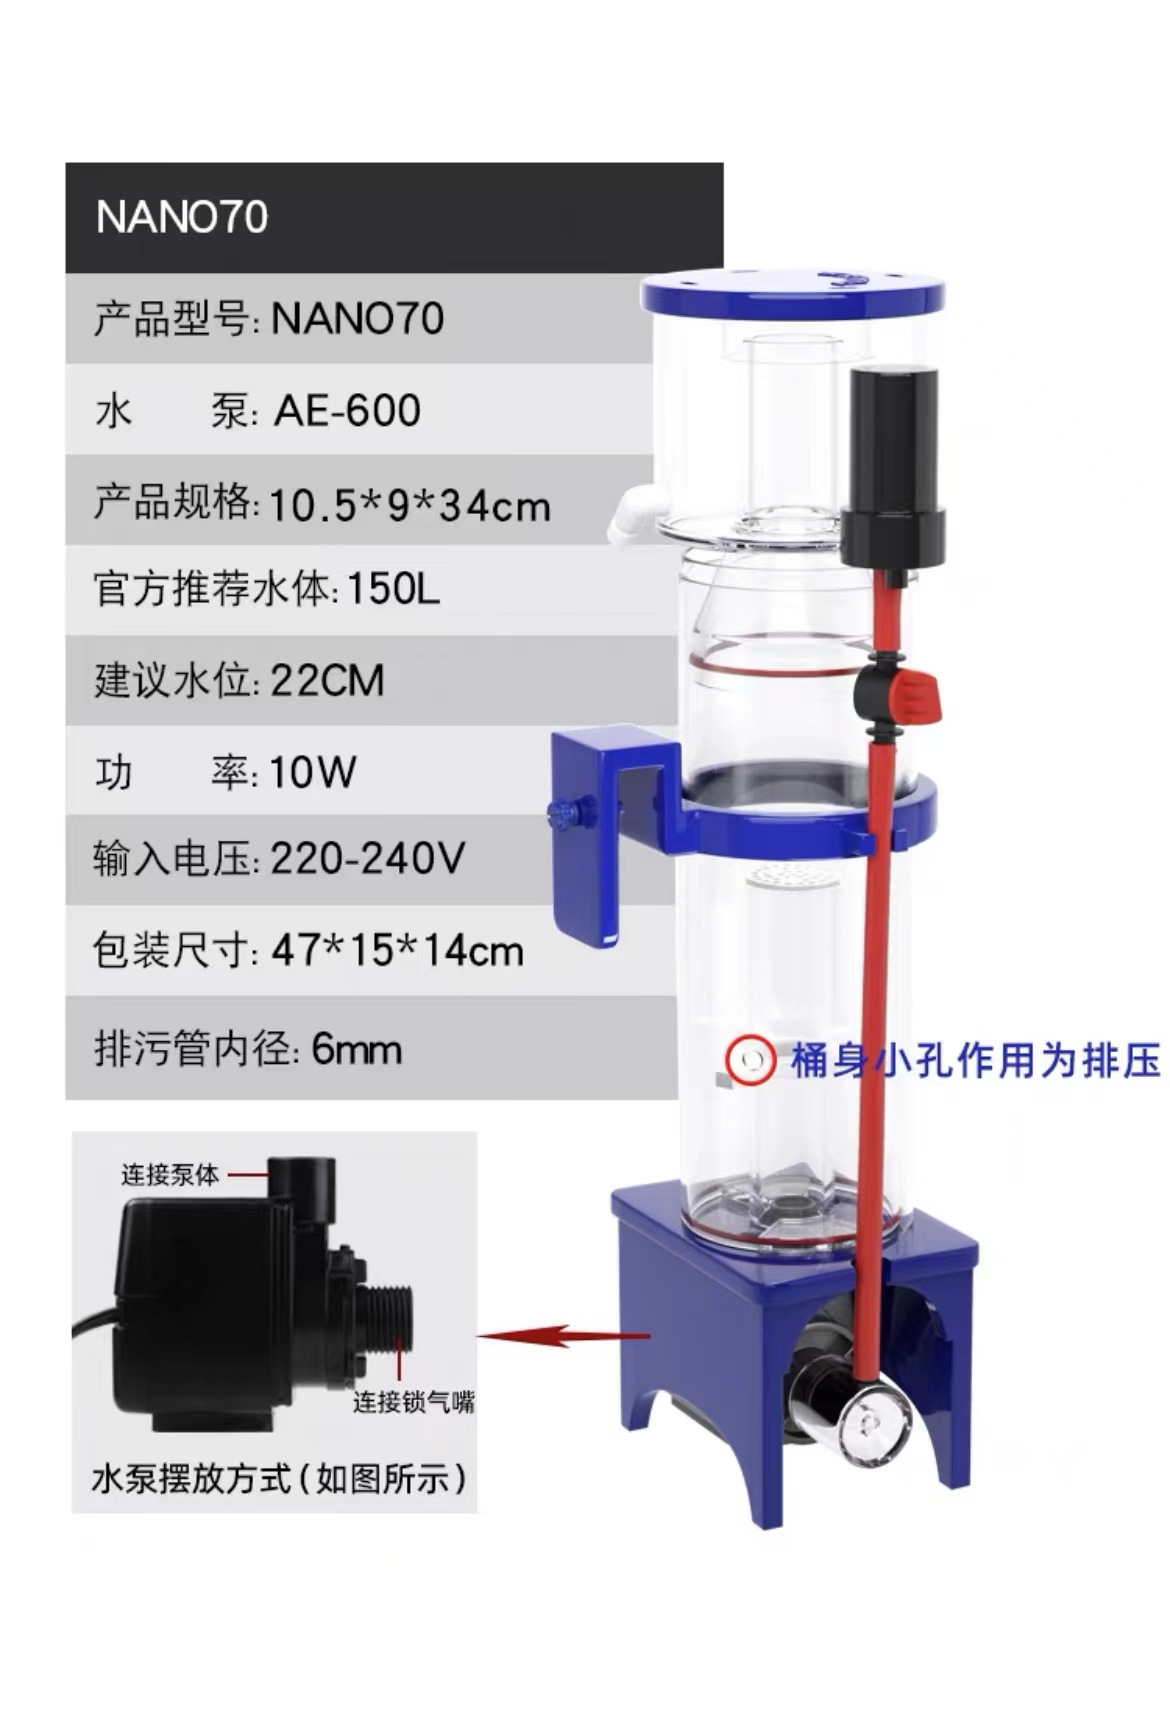 Máy tách bọt skimmer Aquaexcel Nano 50D,70D (BẢN MỚI NHẤT) - Skimmer cao cấp cho hồ cá biển-bể nước mặn-shopleo